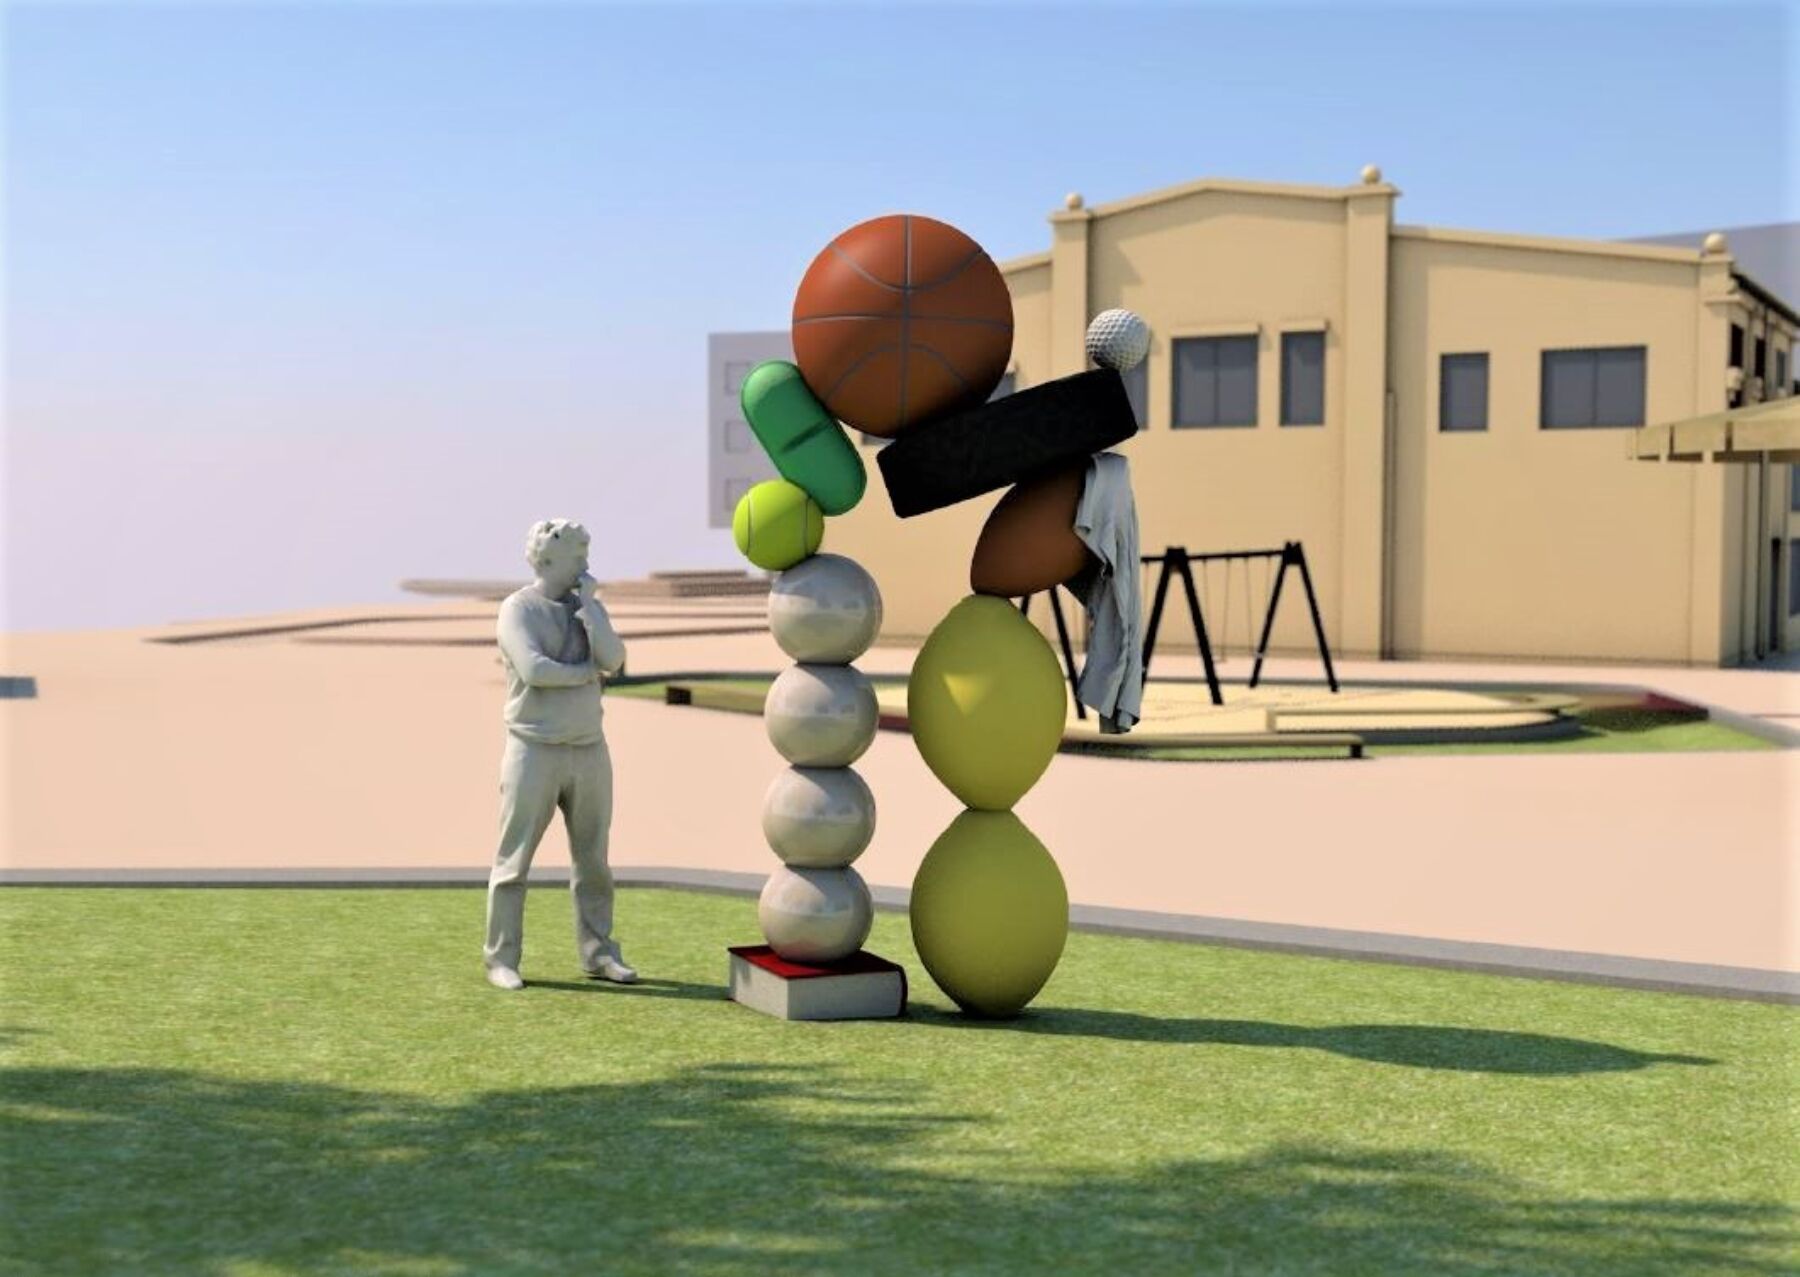 Illustrasjon av en skulptur som betraktes av en person. I bakgrunnen er en skolebygning med lekeplass foran. Illustrasjon.